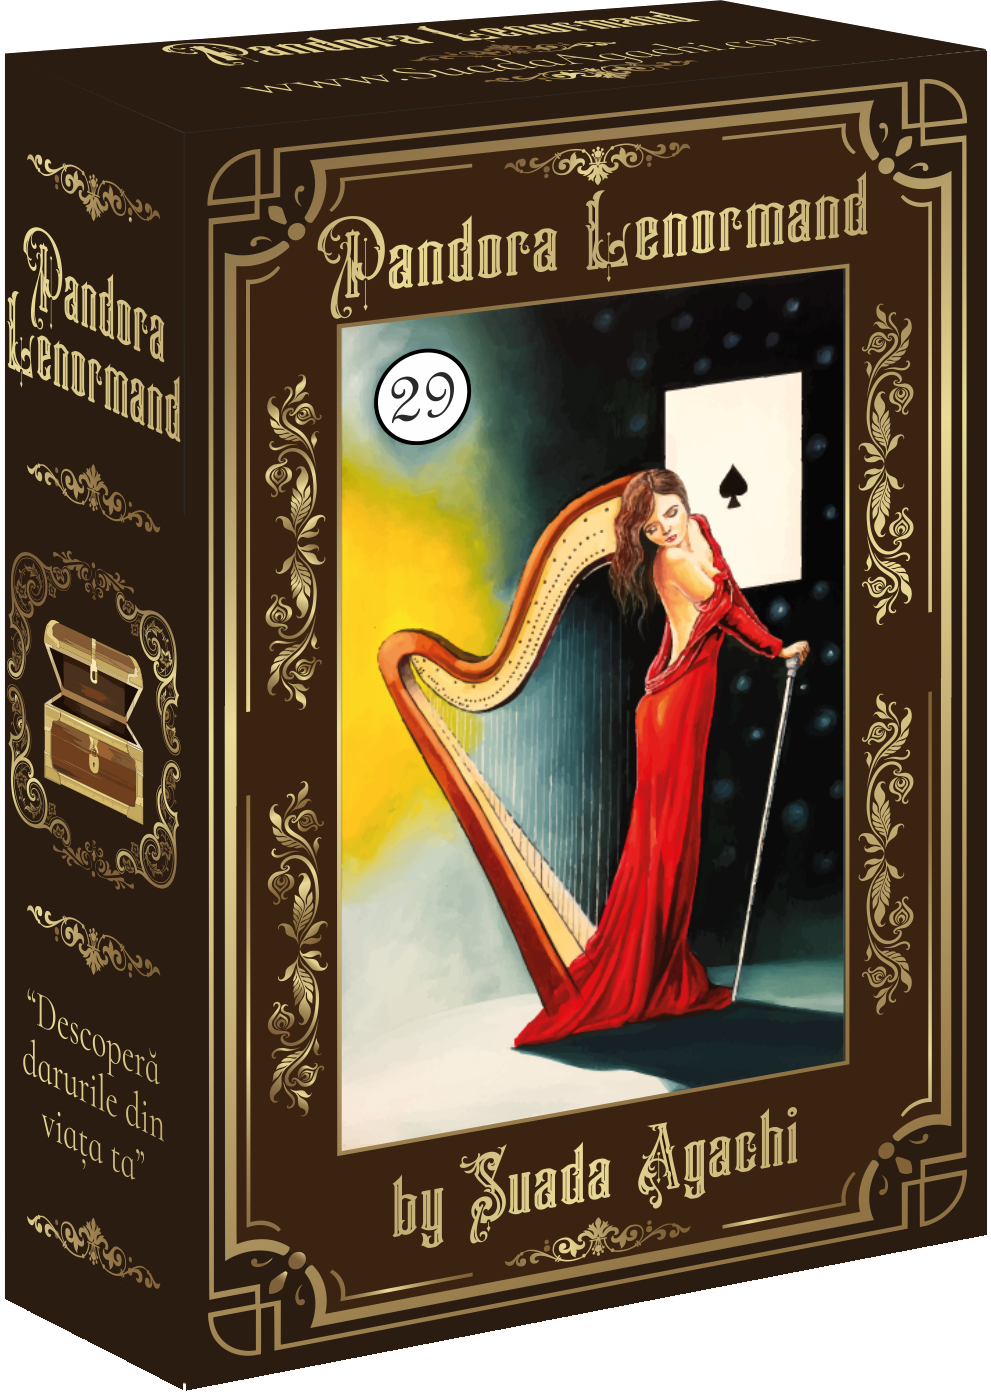 Pandora Lenormand by Suada Agachi